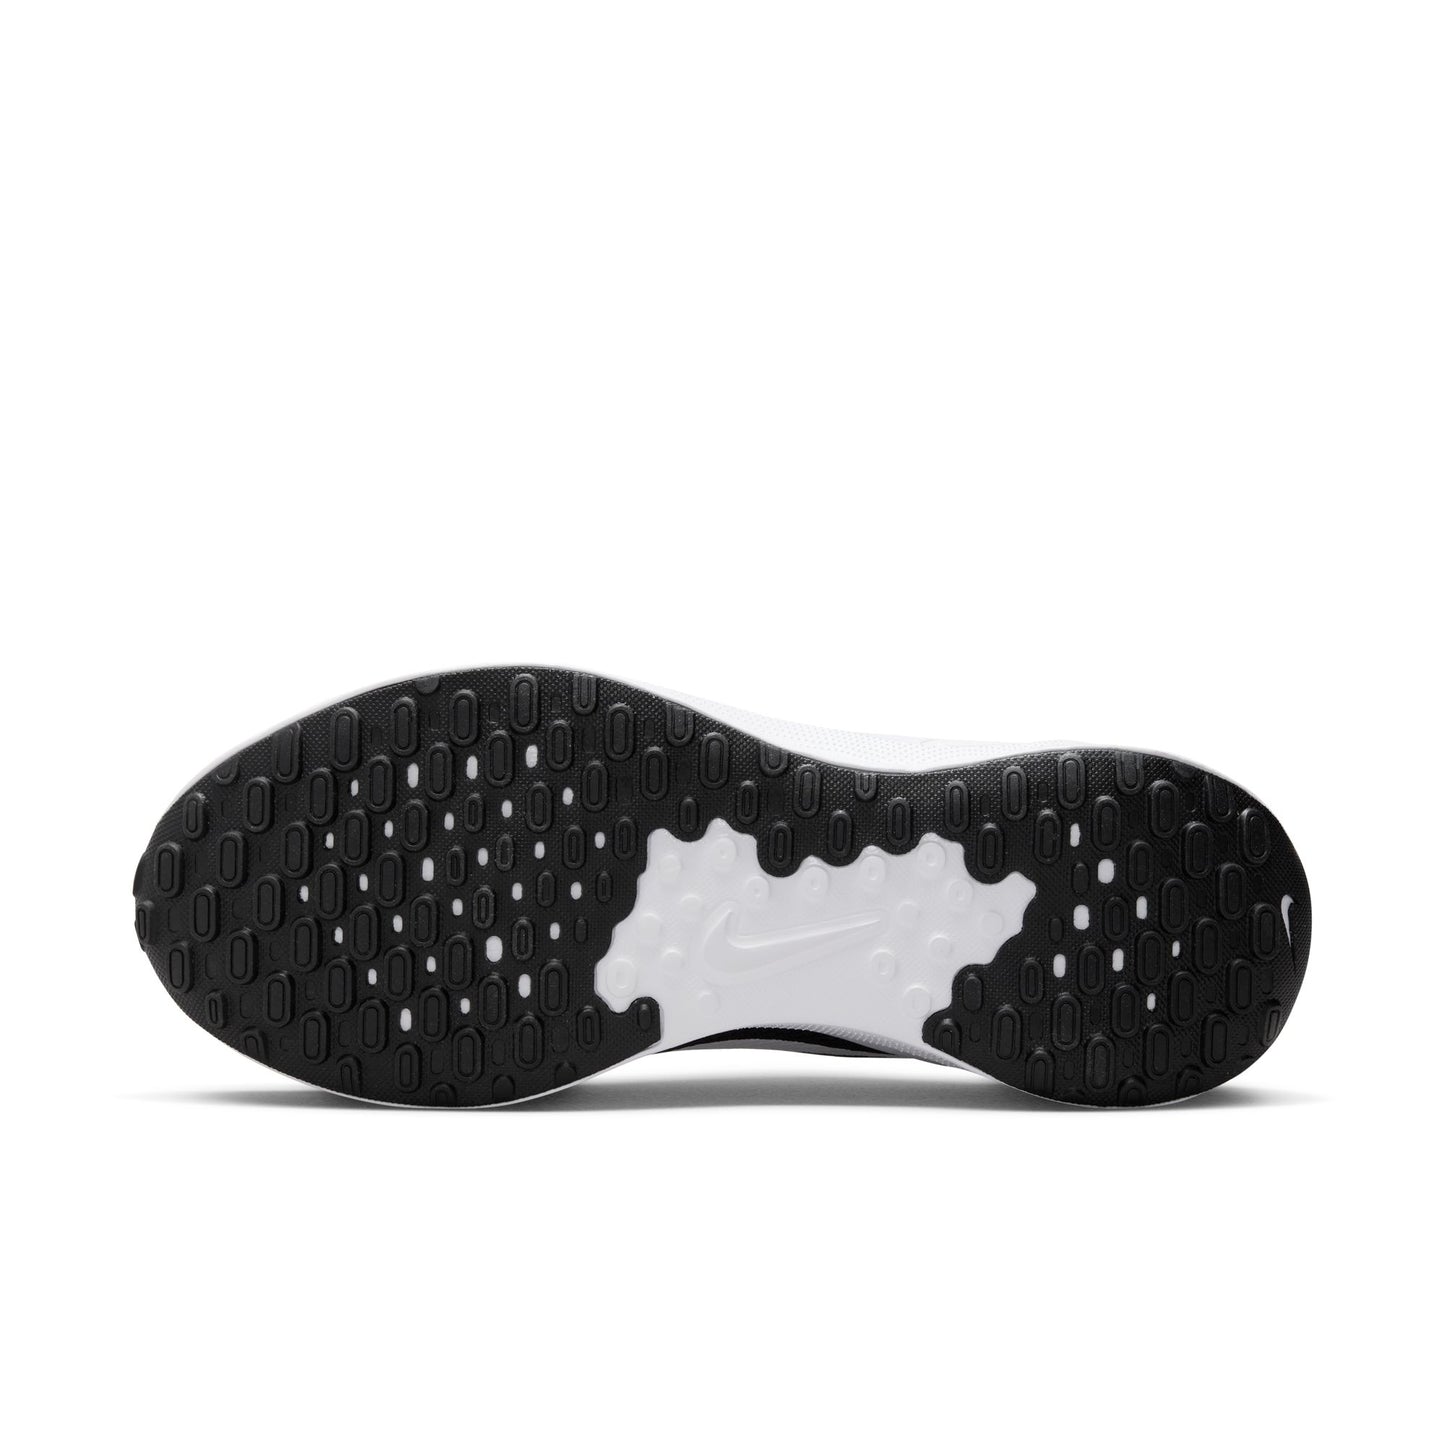 נעלי ספורט לגברים Revolution 7 בצבע שחור ולבן